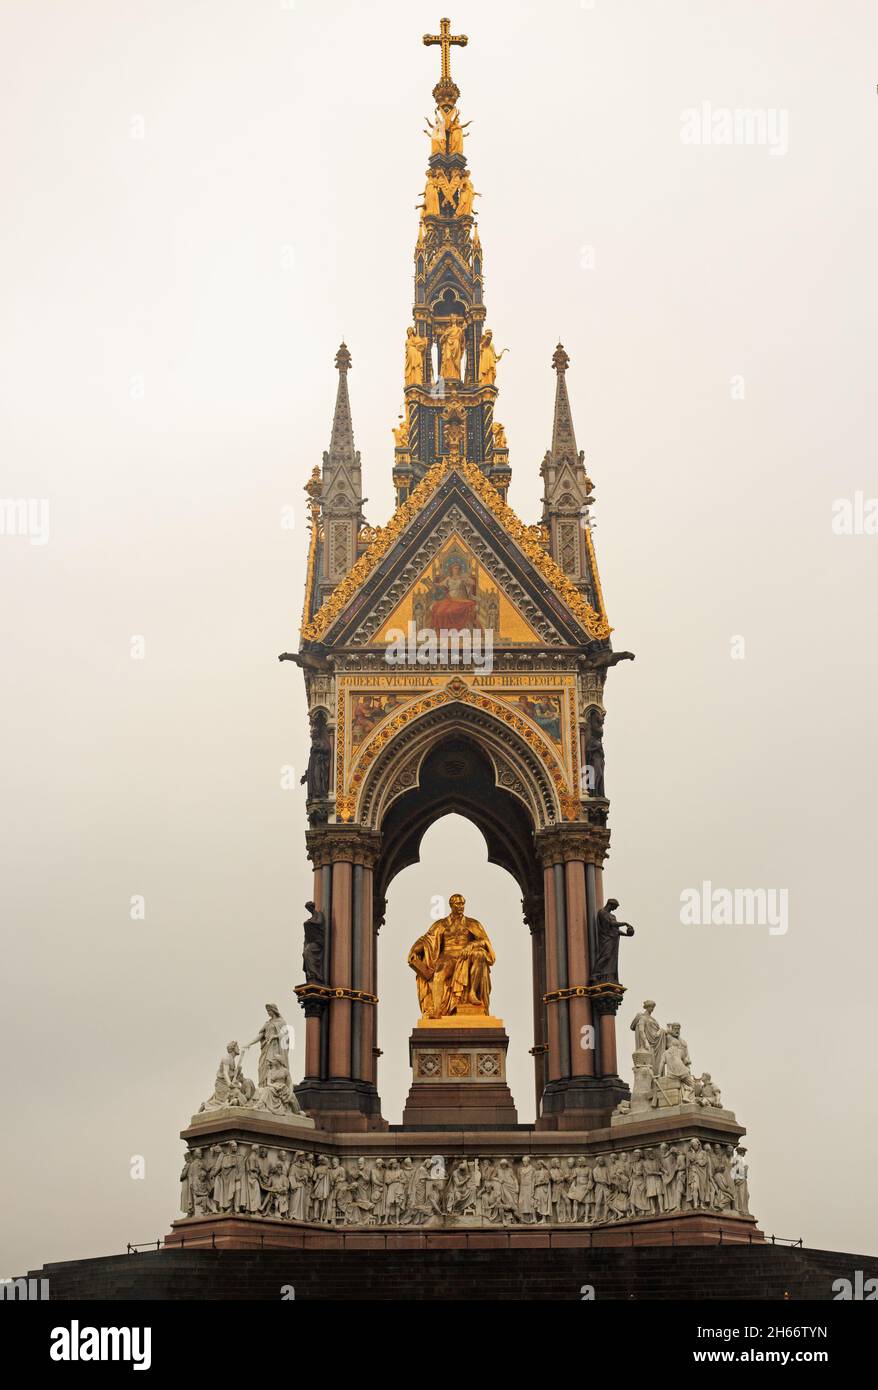 Albert Memorial, Knightsbridge, Londra, 2021. Fu commissionata dalla regina Vittoria in memoria del suo amato marito Principe Alberto, morto nel 1861. Foto Stock